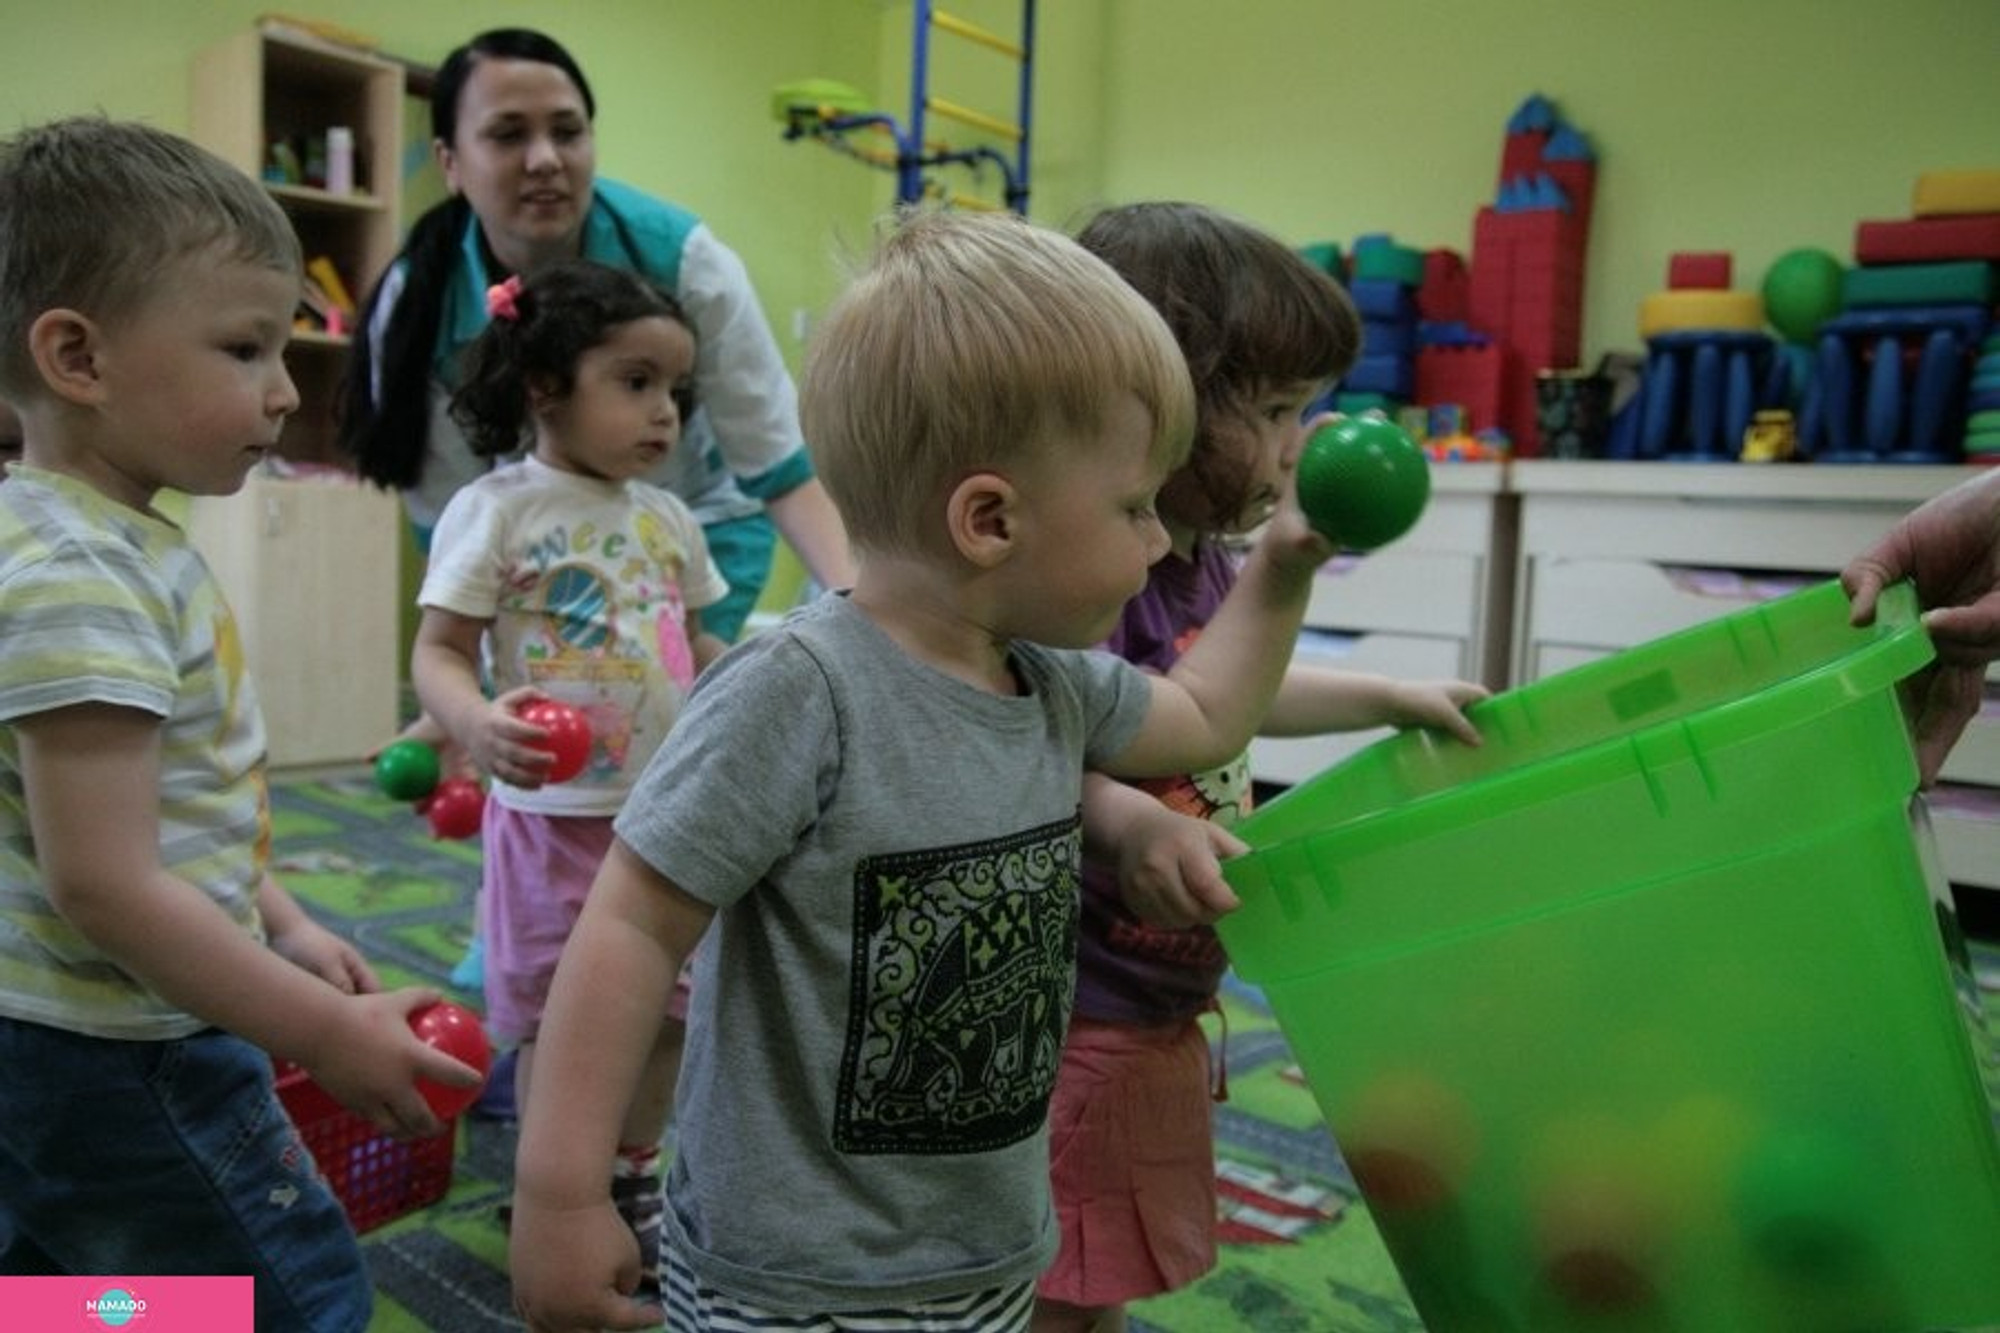 "Студио пупс", детский клуб для малышей от 1 года до 7 лет в Залесном, Казань 